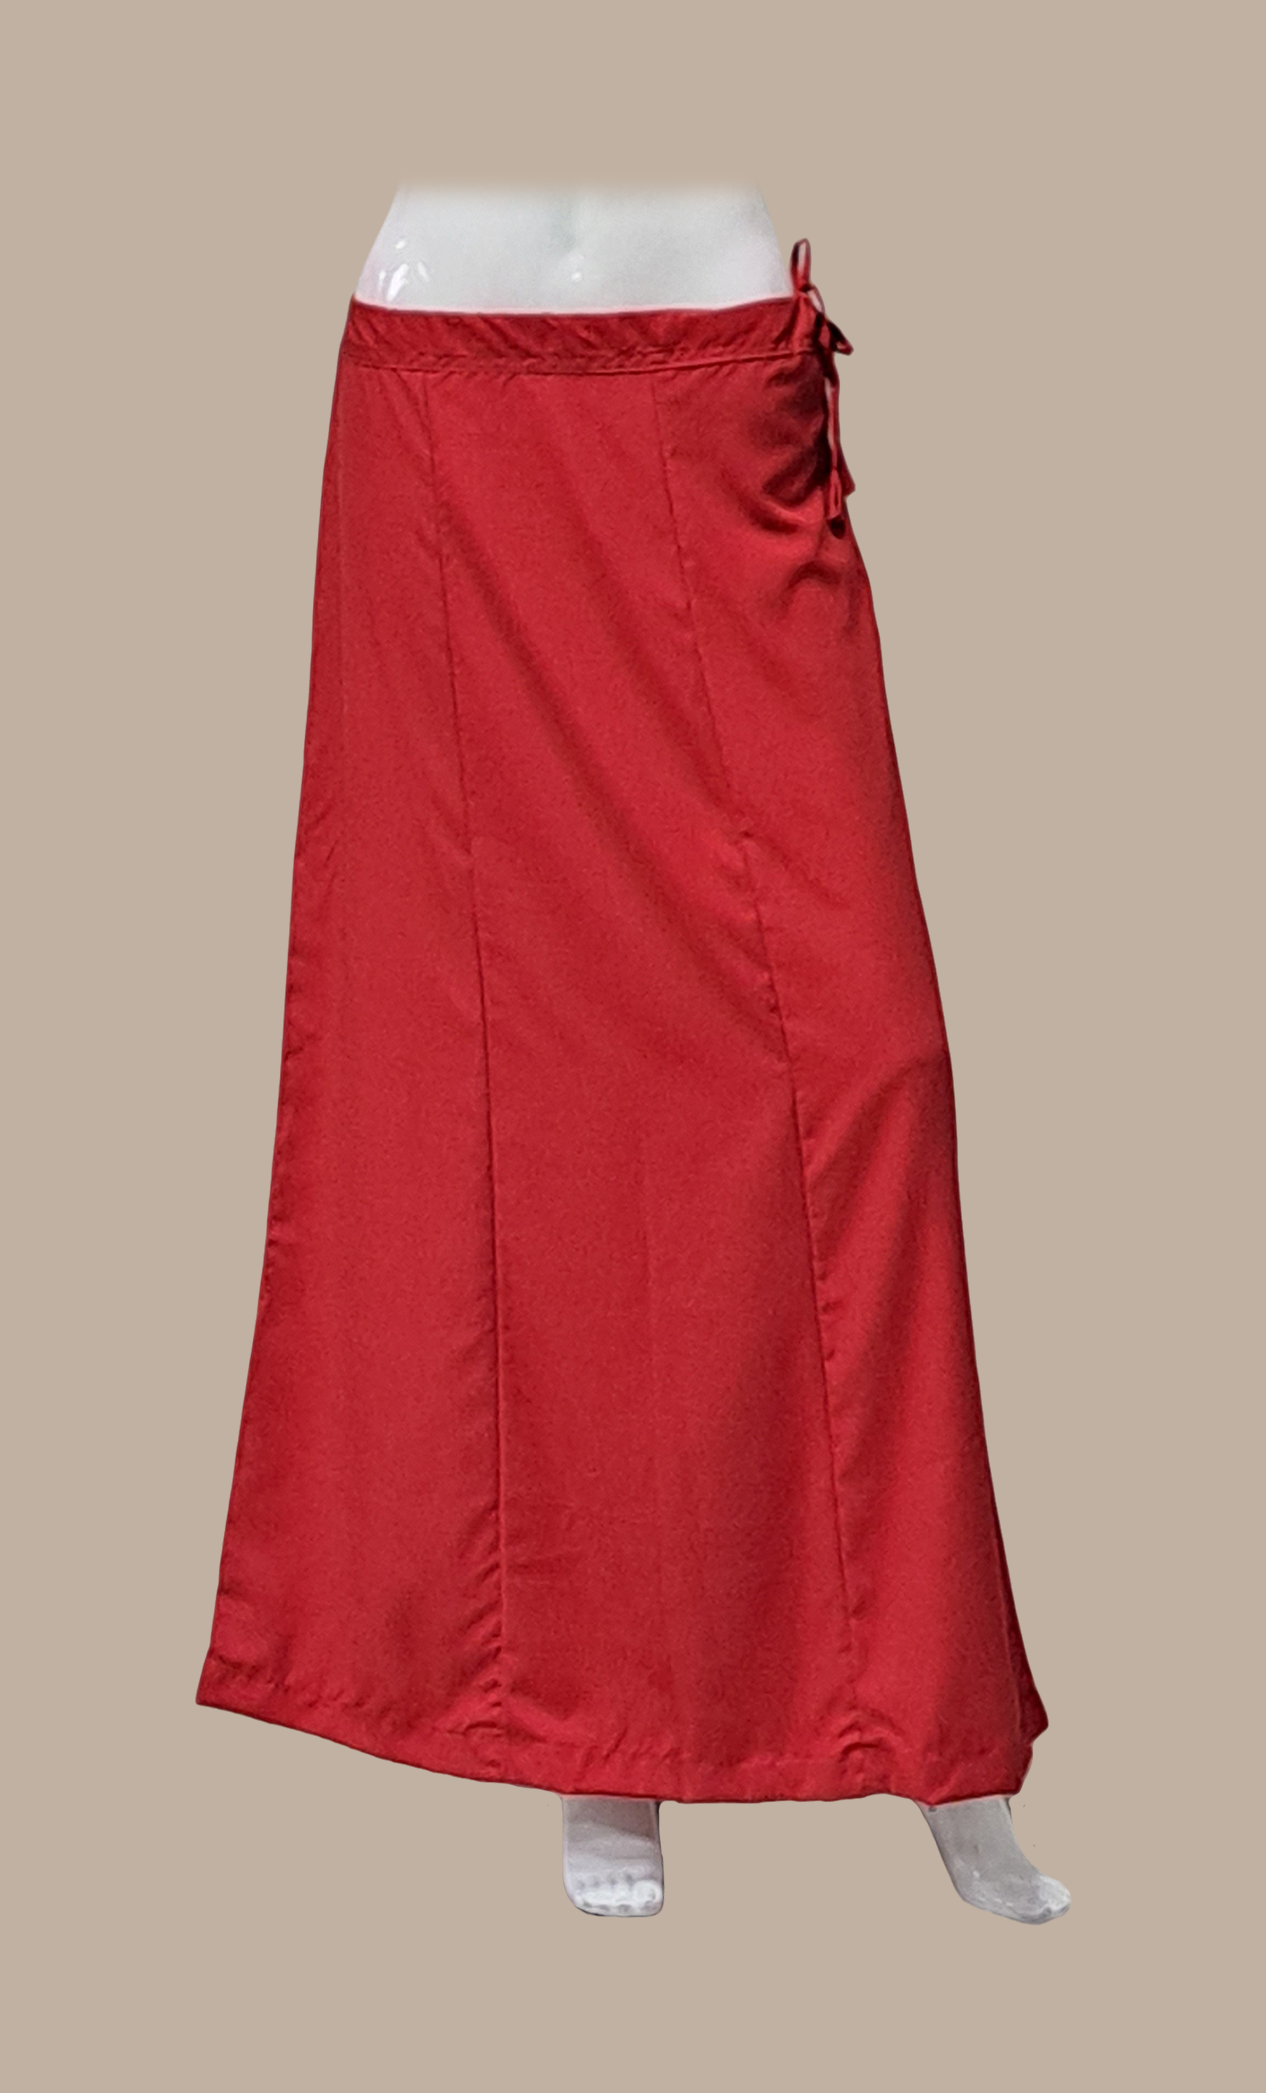 Bright Red Cotton Under Skirt